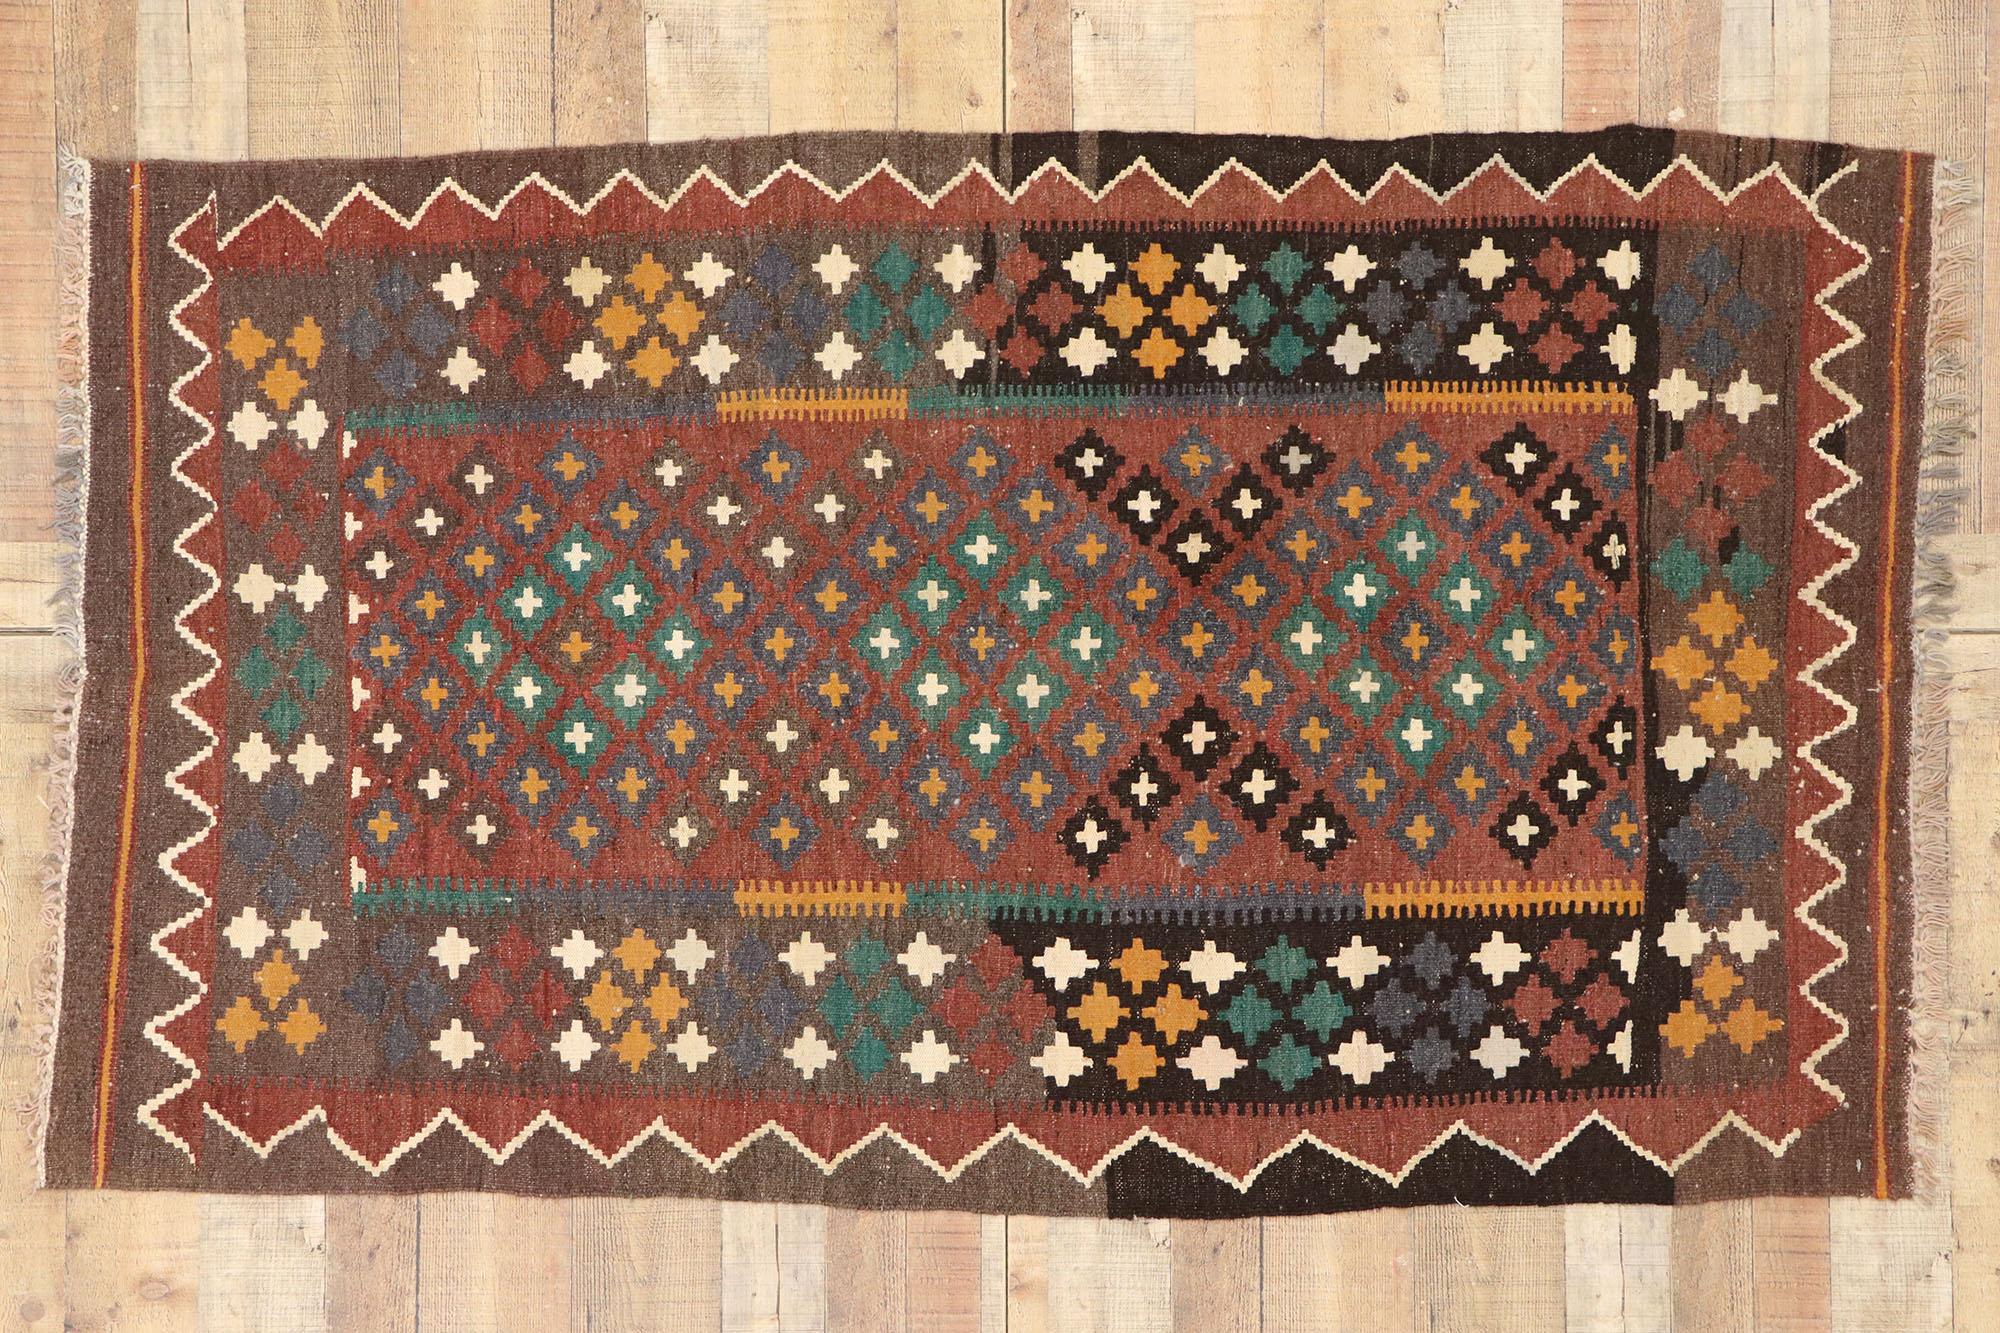 Vintage Afghan Kilim Rug with Rustic Modern Pacific Northwest Style 1